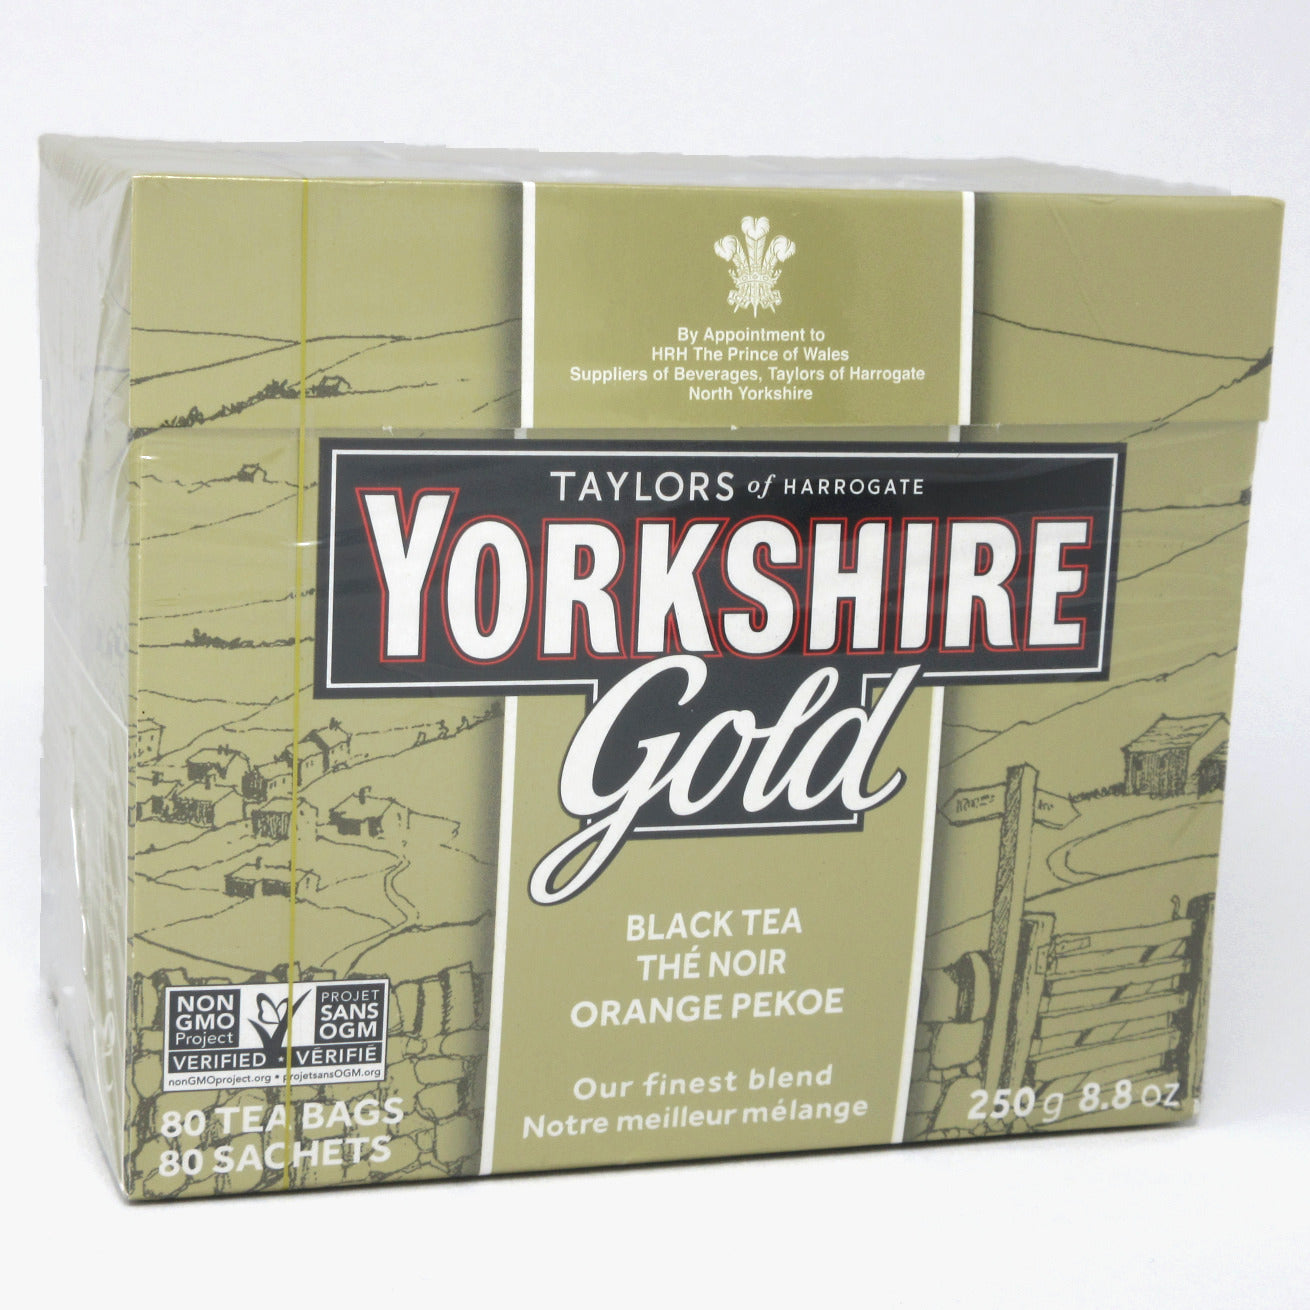 Flour Barrel product image - Yorkshire Gold Orange Pekoe